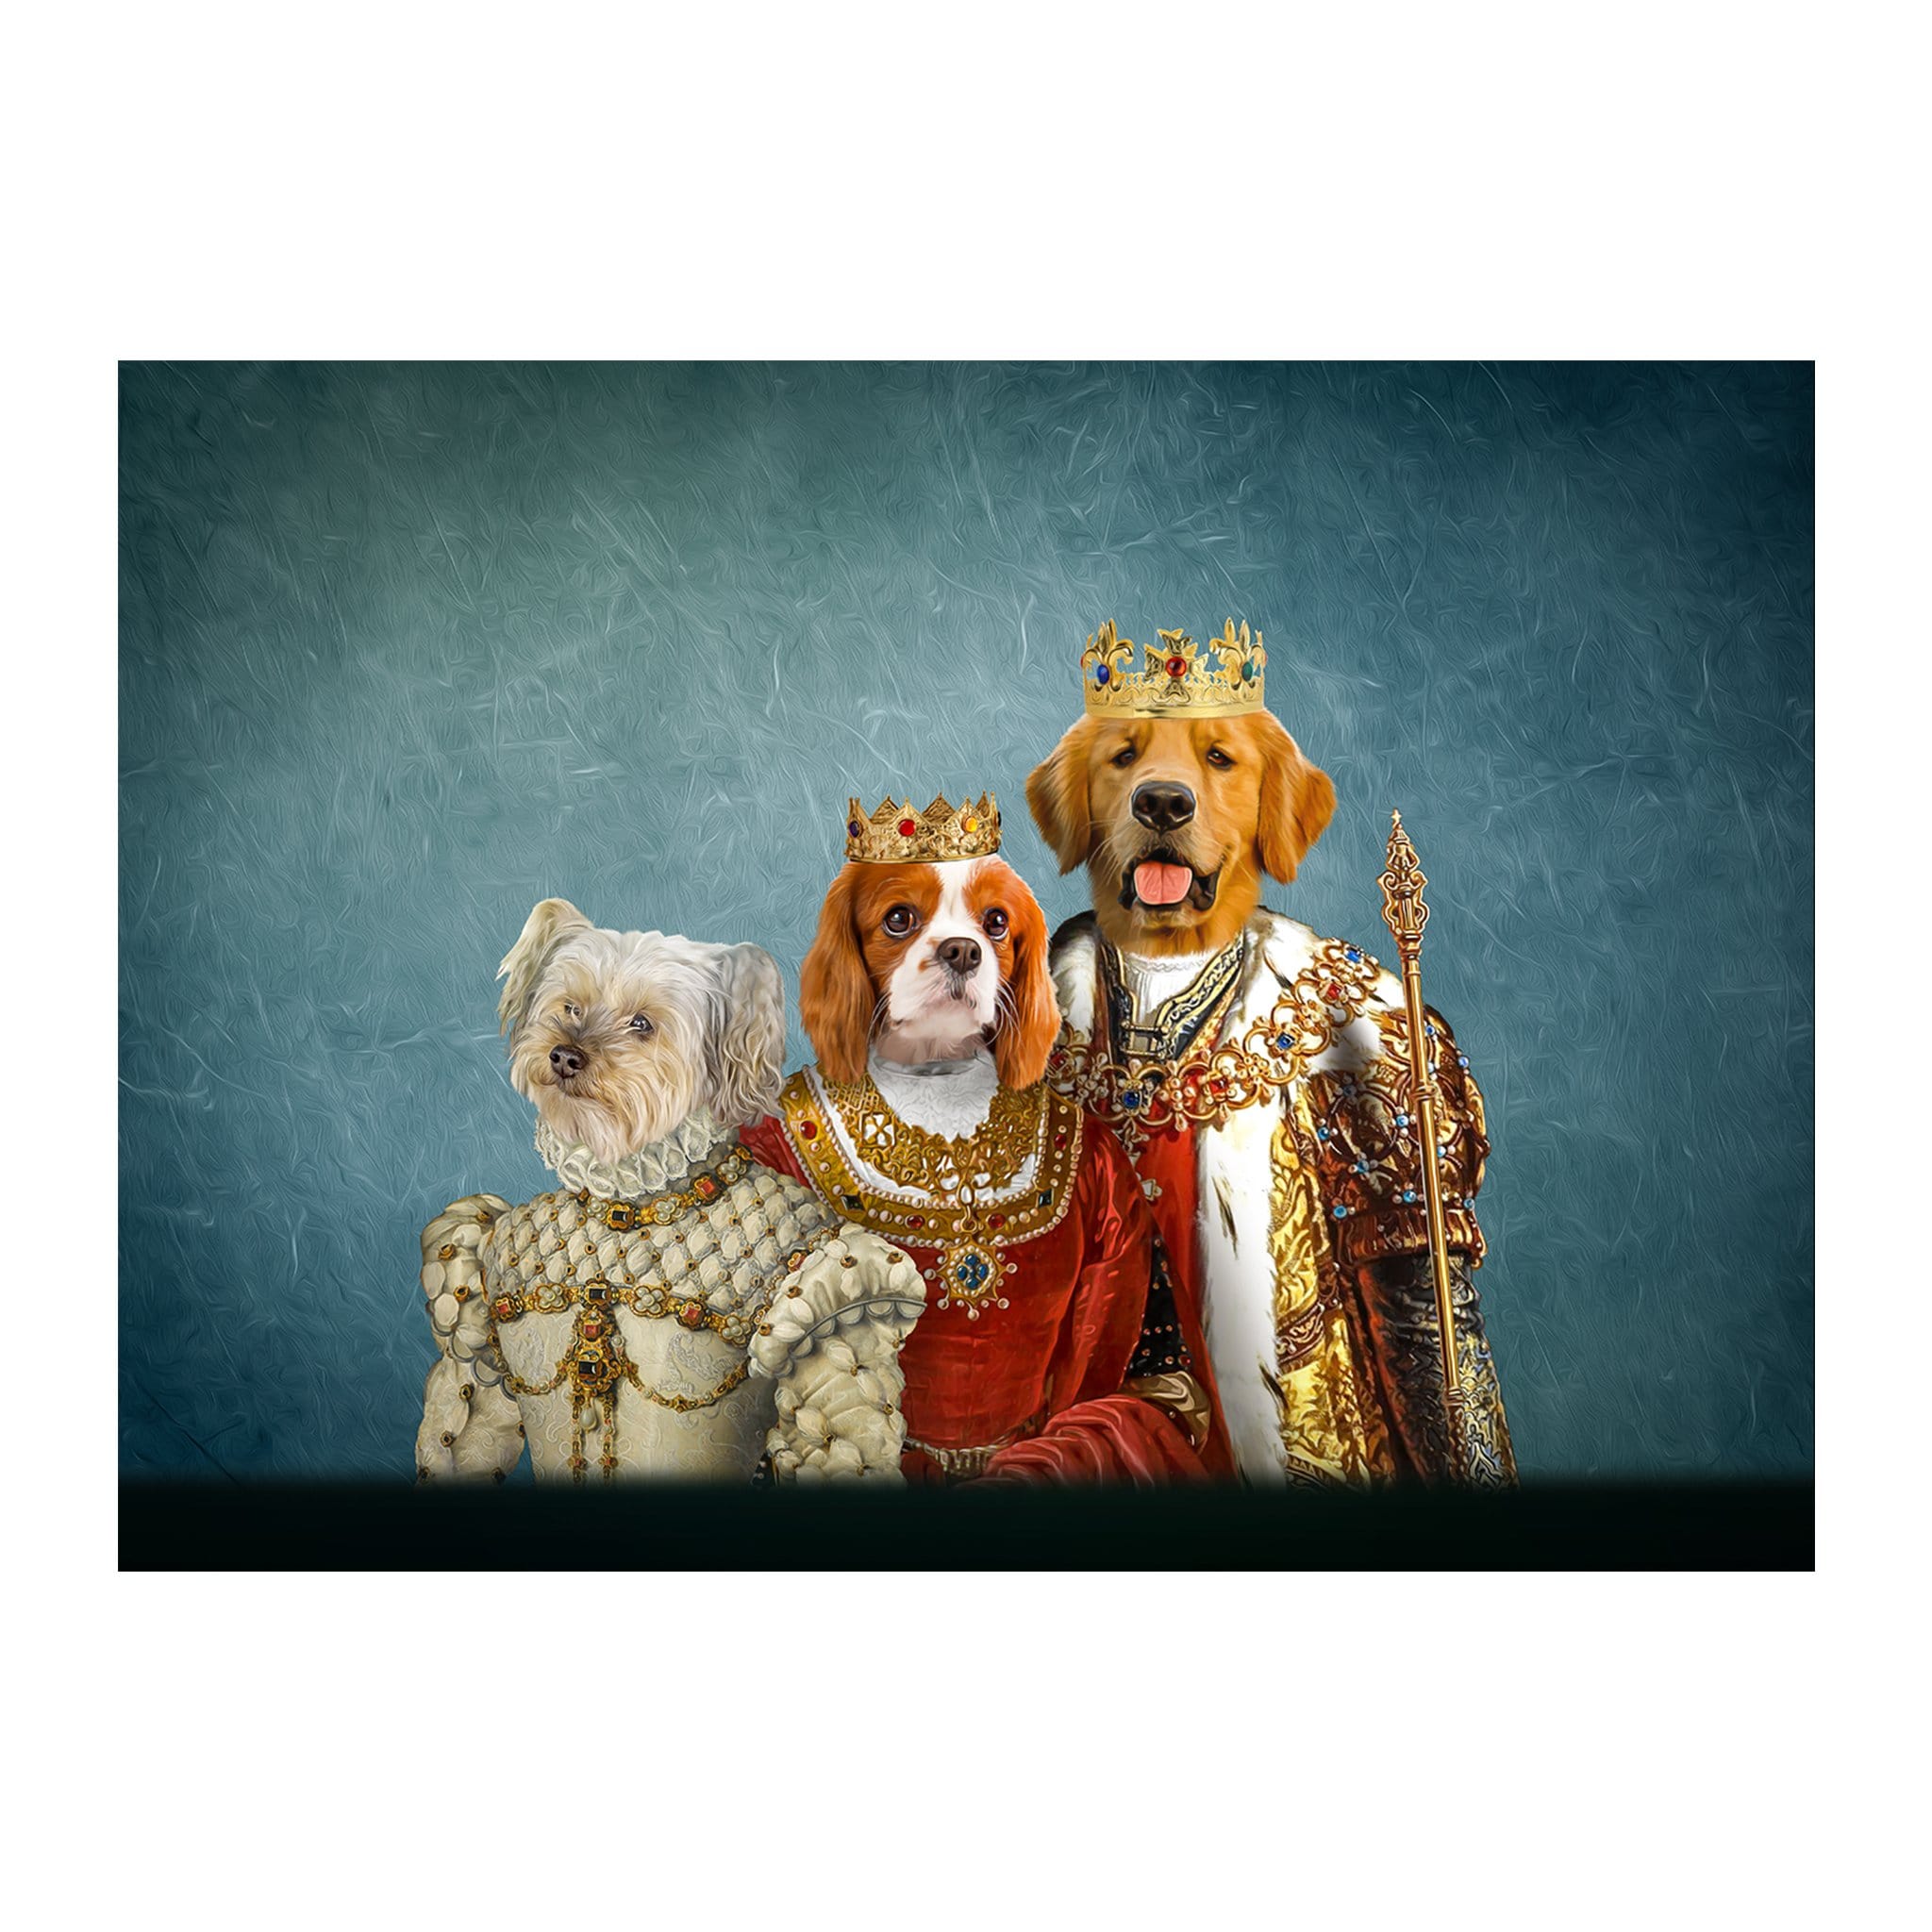 &#39;The Royal Family&#39; 3 Pet Digital Portrait